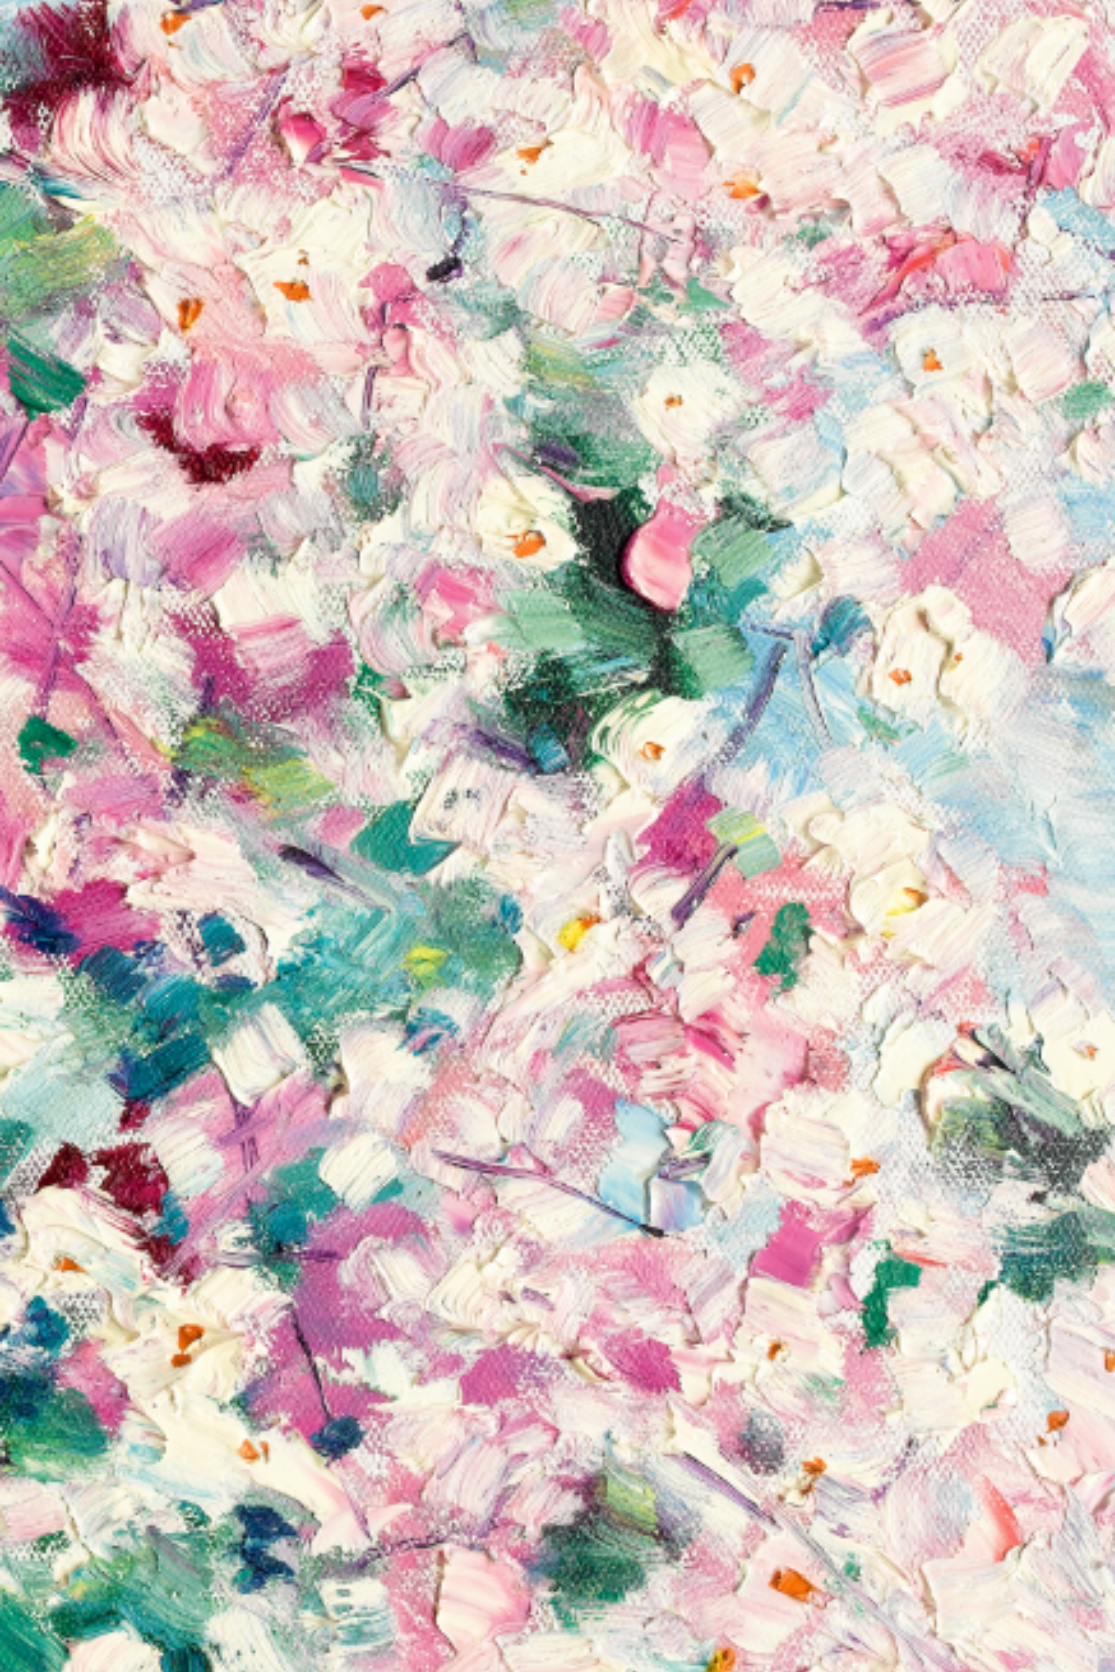 Cashmere Silk Scarf - Cherry Blossom - Cara Cashmere